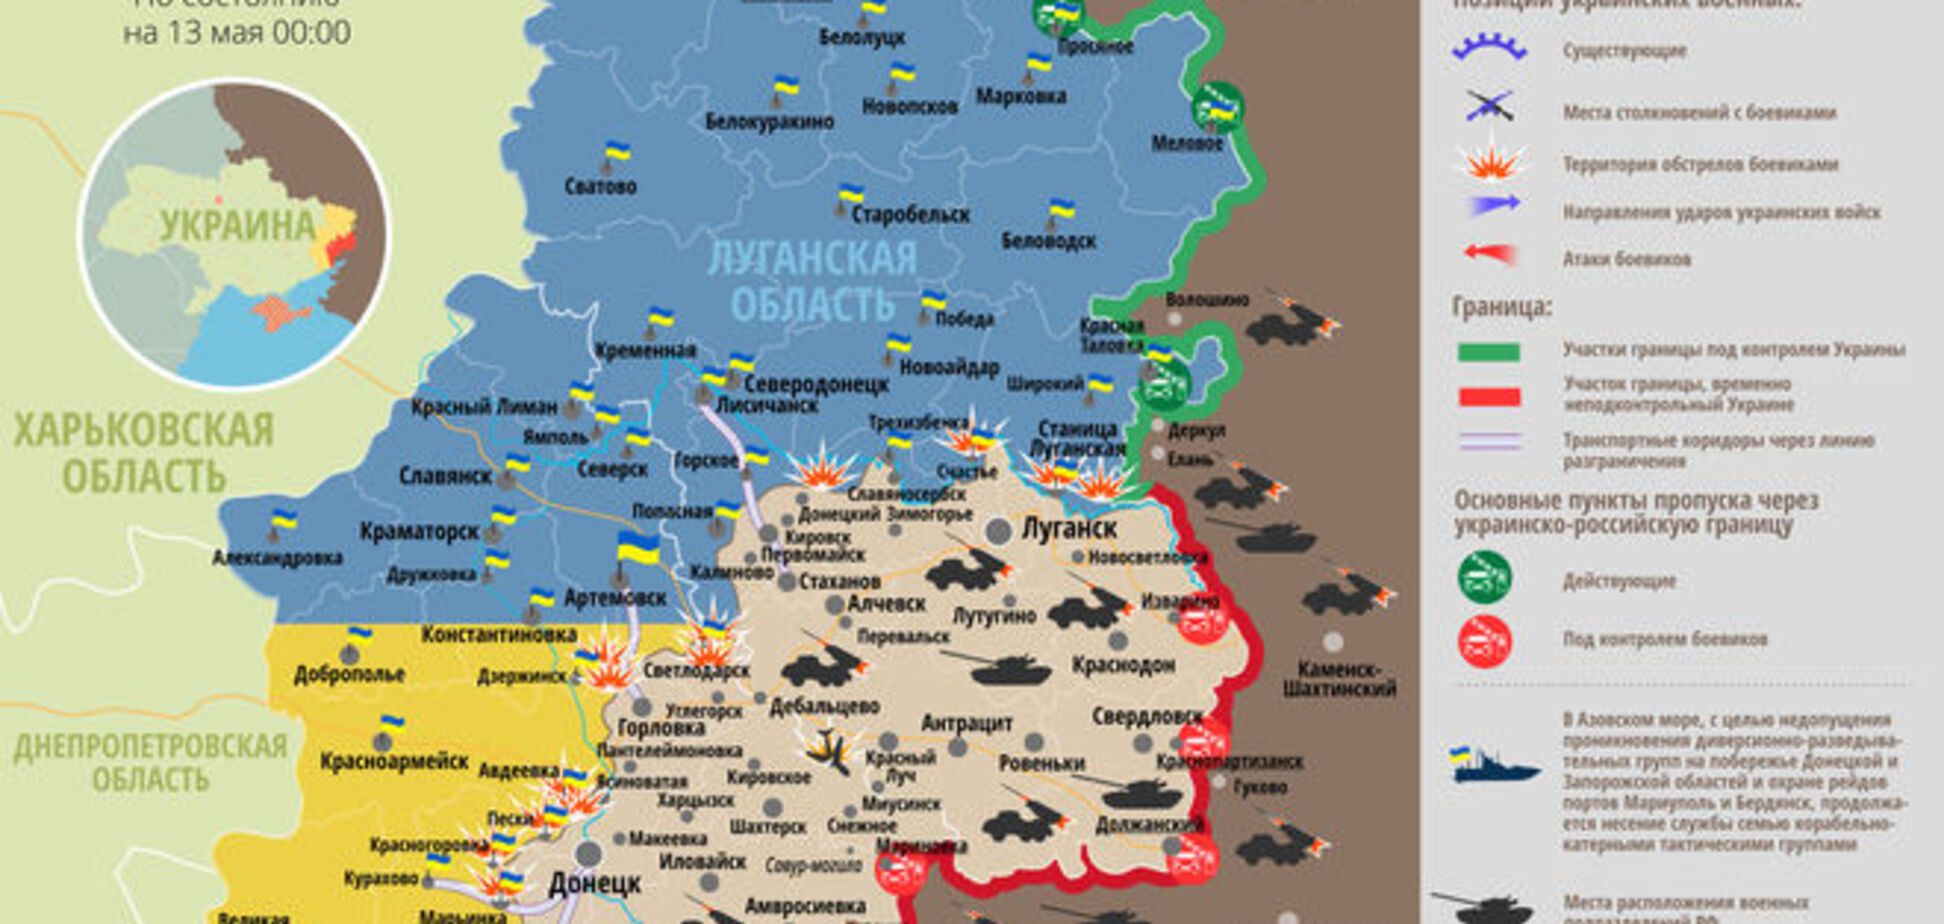 Террористы хотят сорвать перемирие, чтобы обвинить в этом Украину: карта АТО